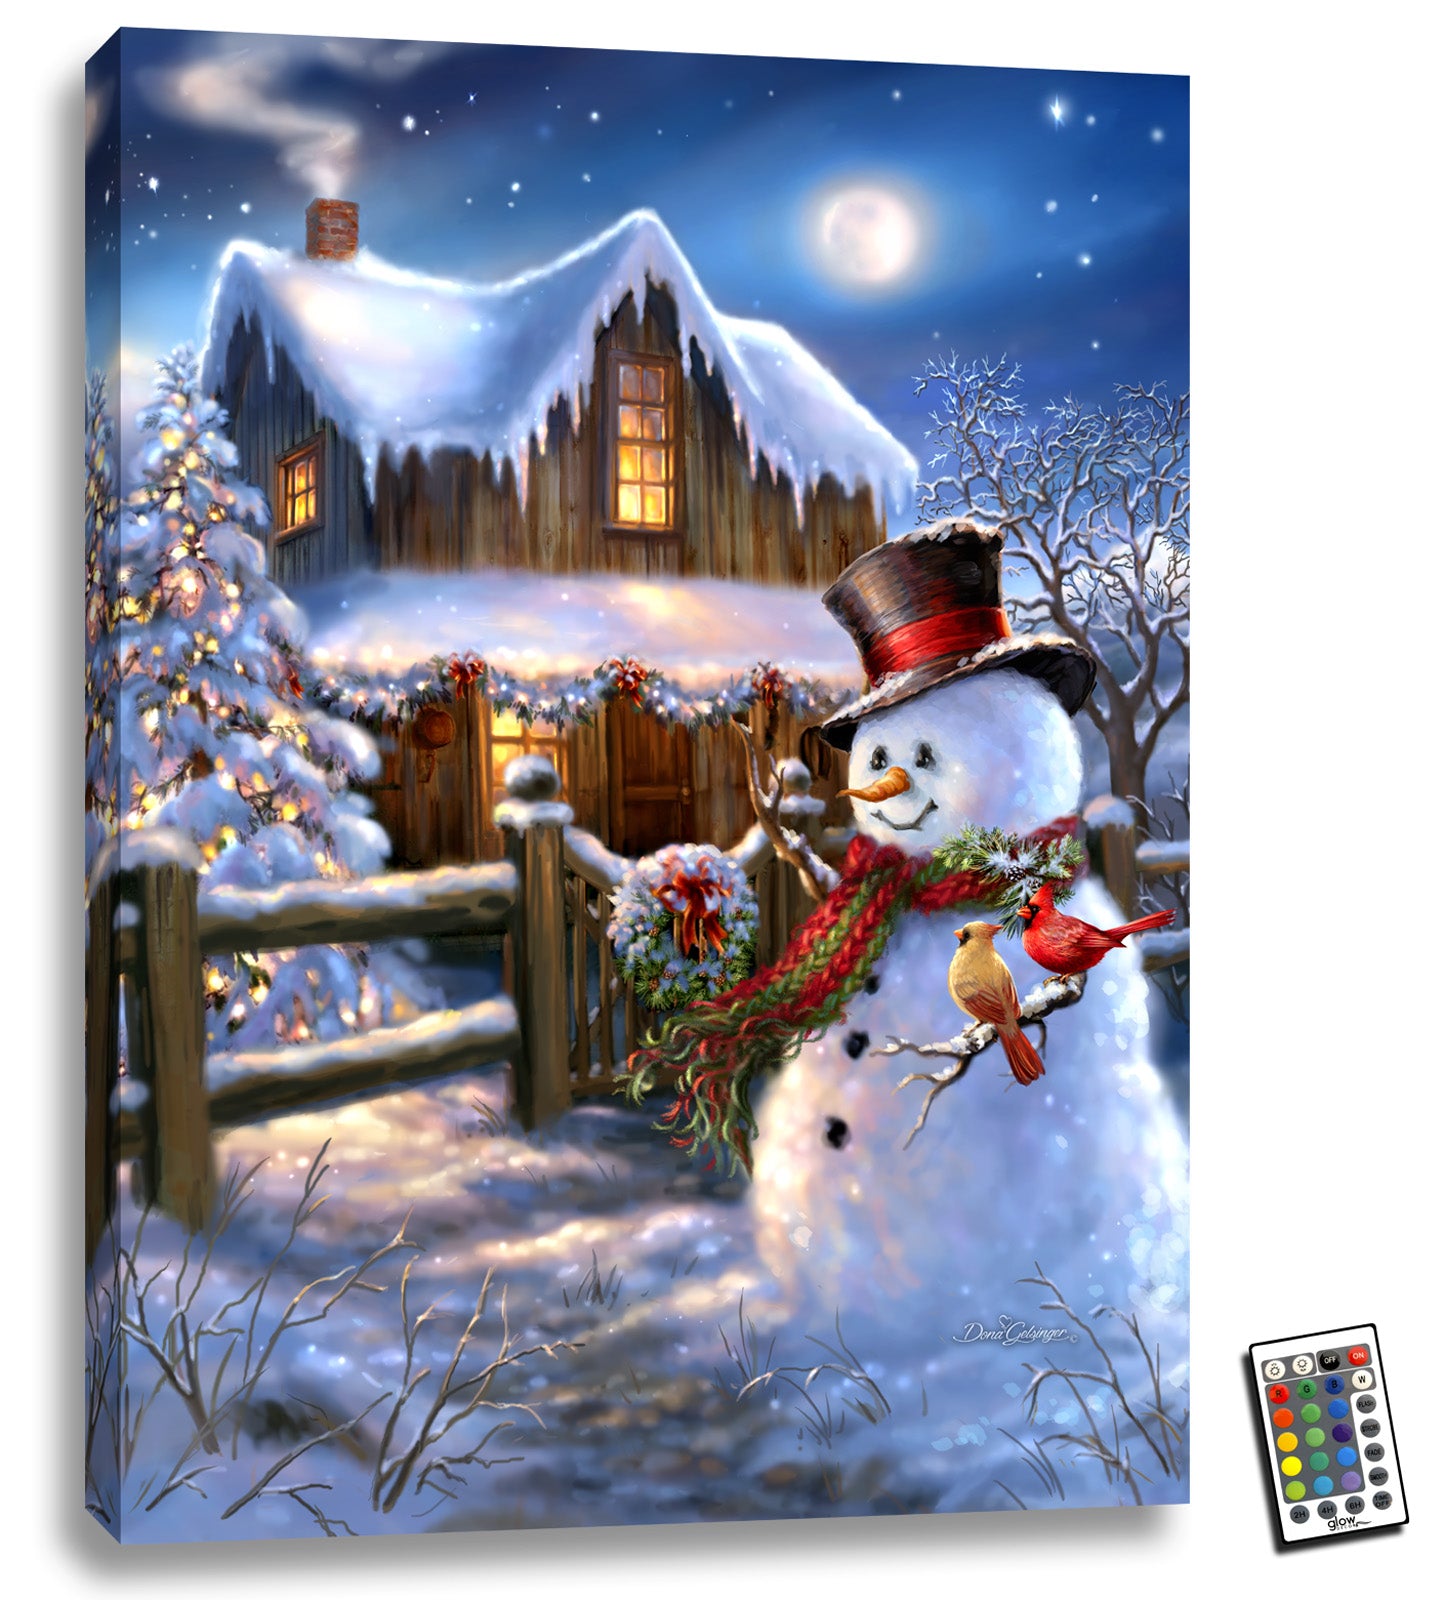 Woodhouse Christmas 18x24 Fully Illuminated LED Wall Art